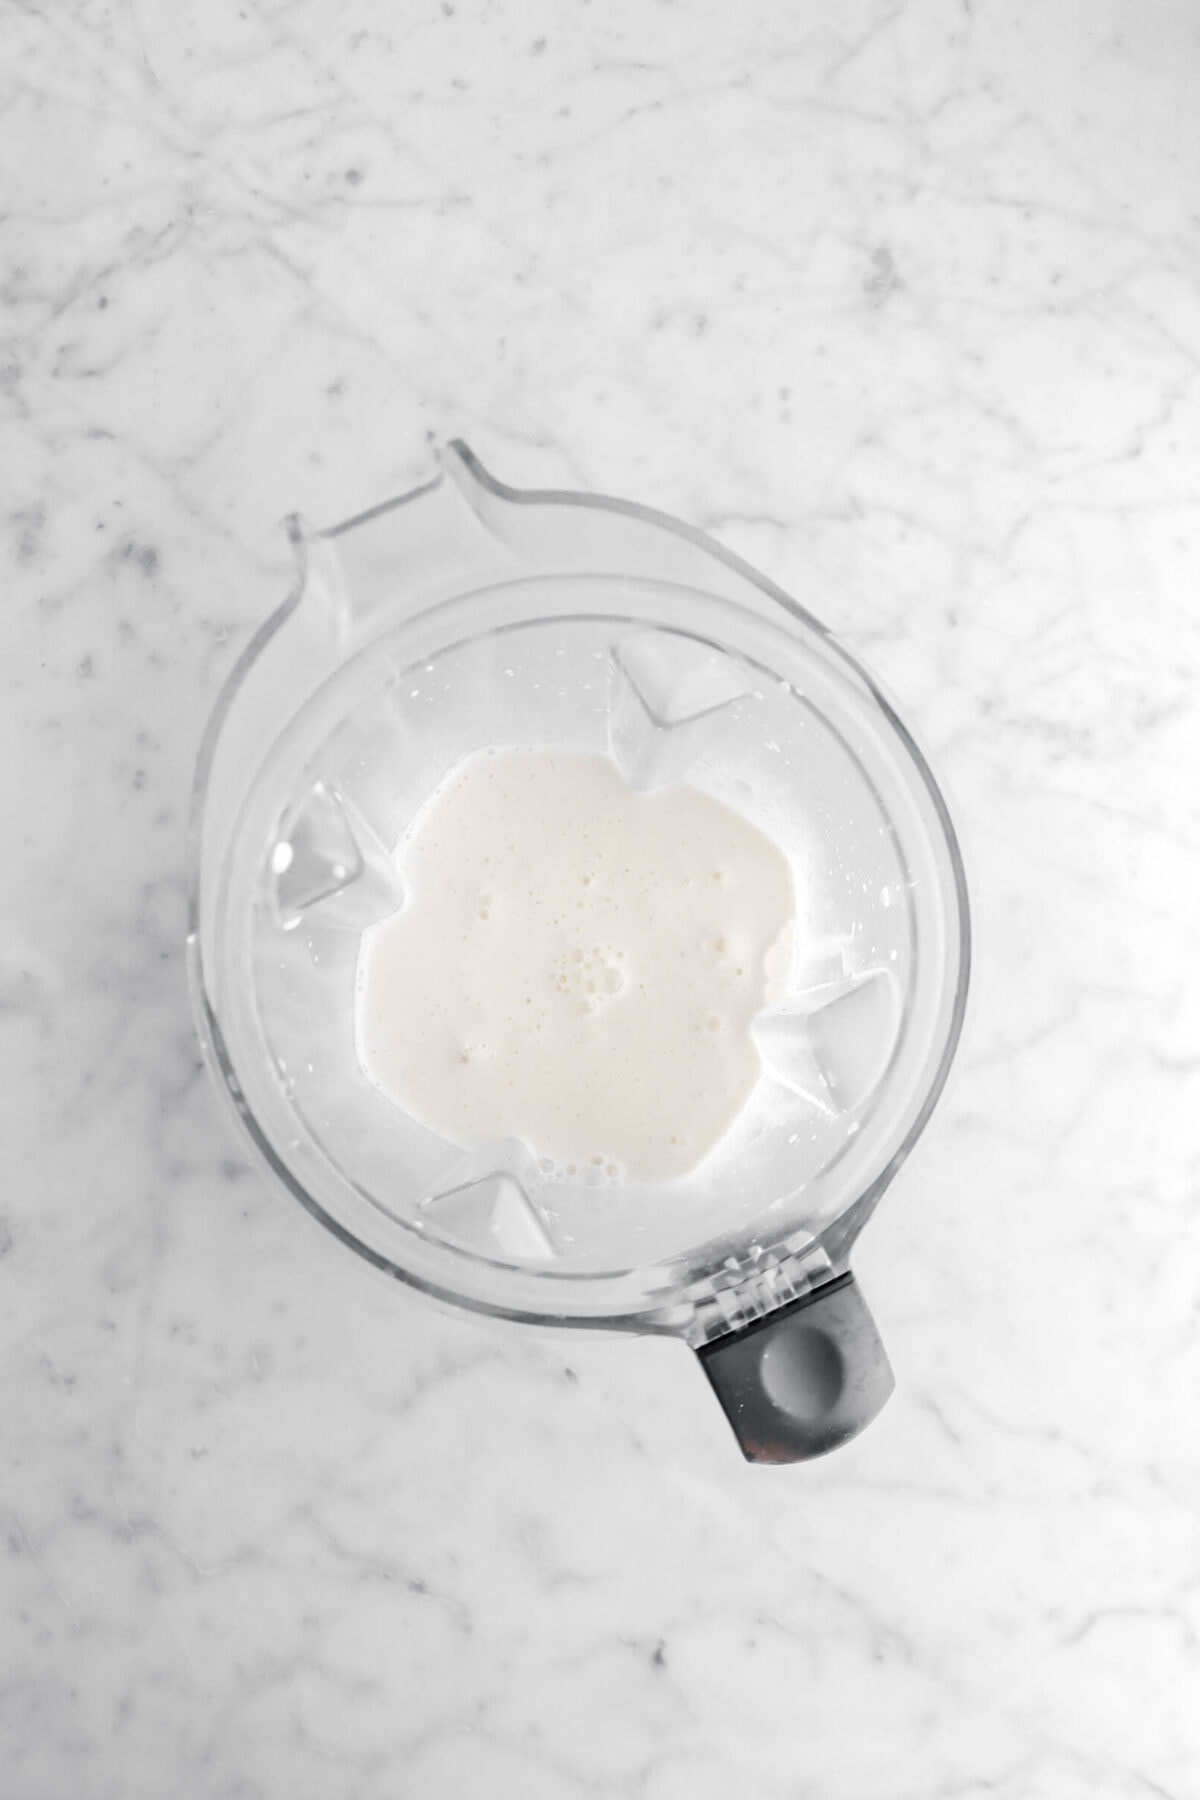 milkshake in blender on marble surface.